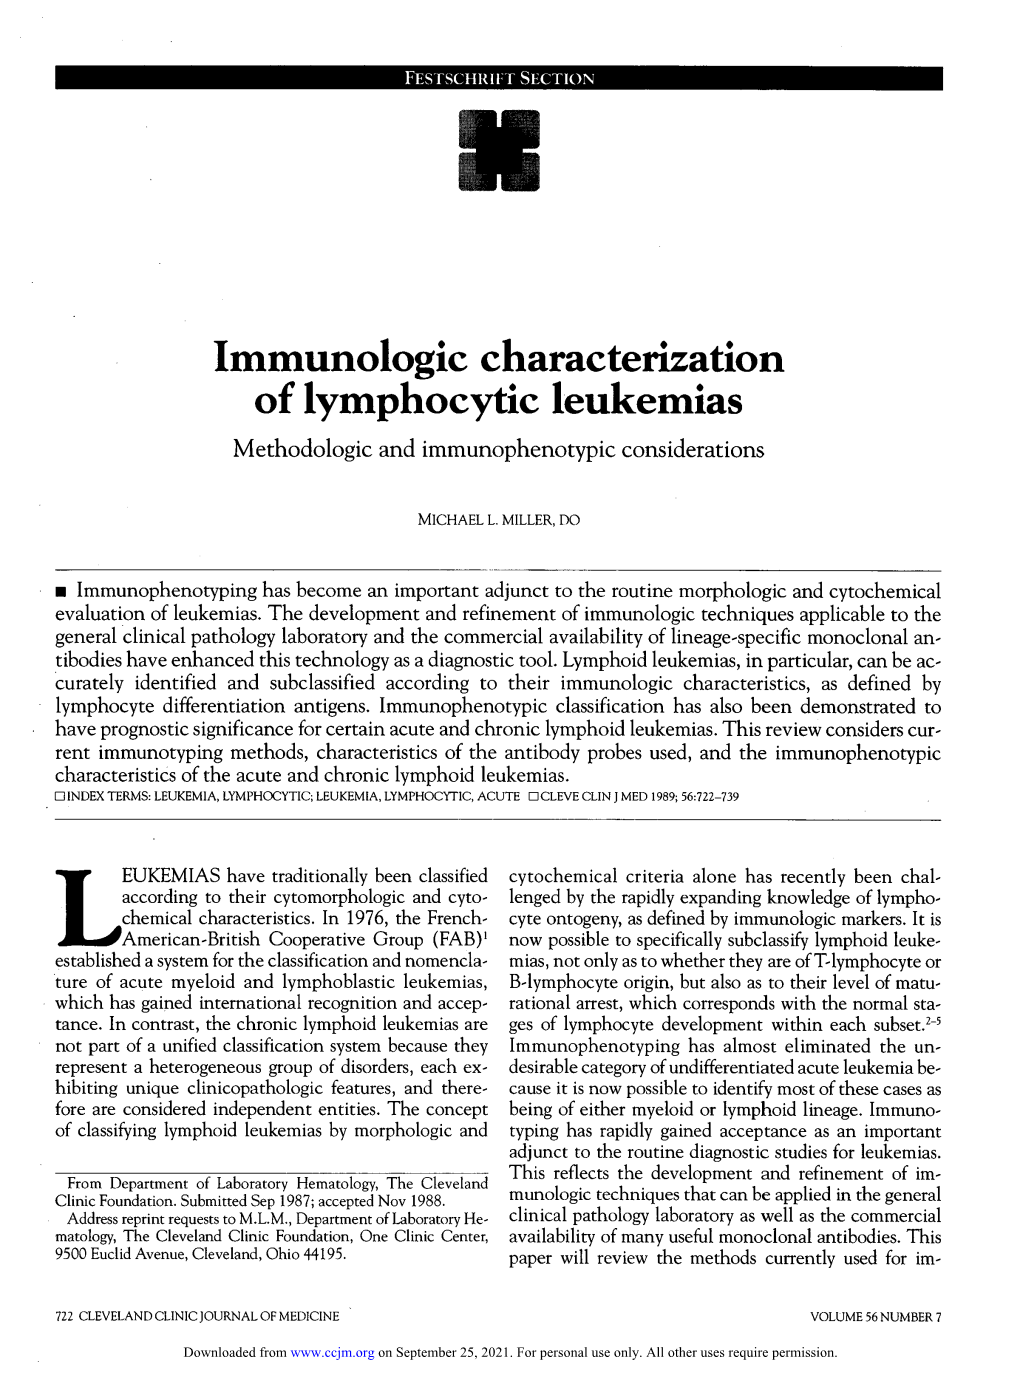 Immunologic Characterization of Lymphocytic Leukemias Methodologic and Immunophenotypic Considerations